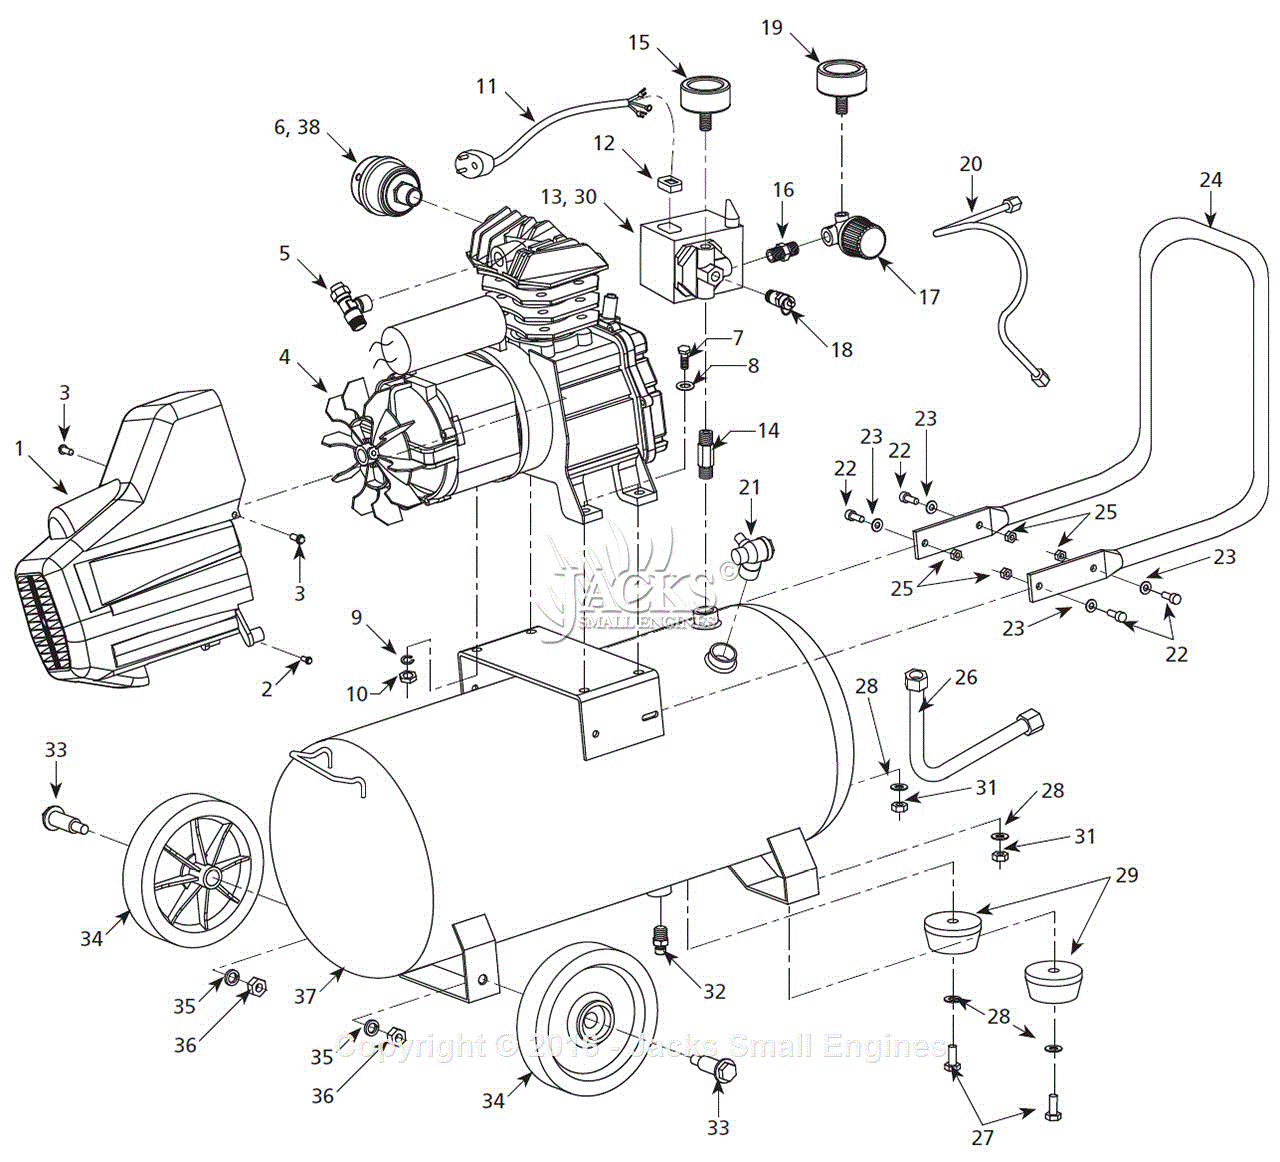 Campbell Hausfeld Air Compressor Parts Diagram Air Compressor Diagram Parts Wiring Diagram Directory